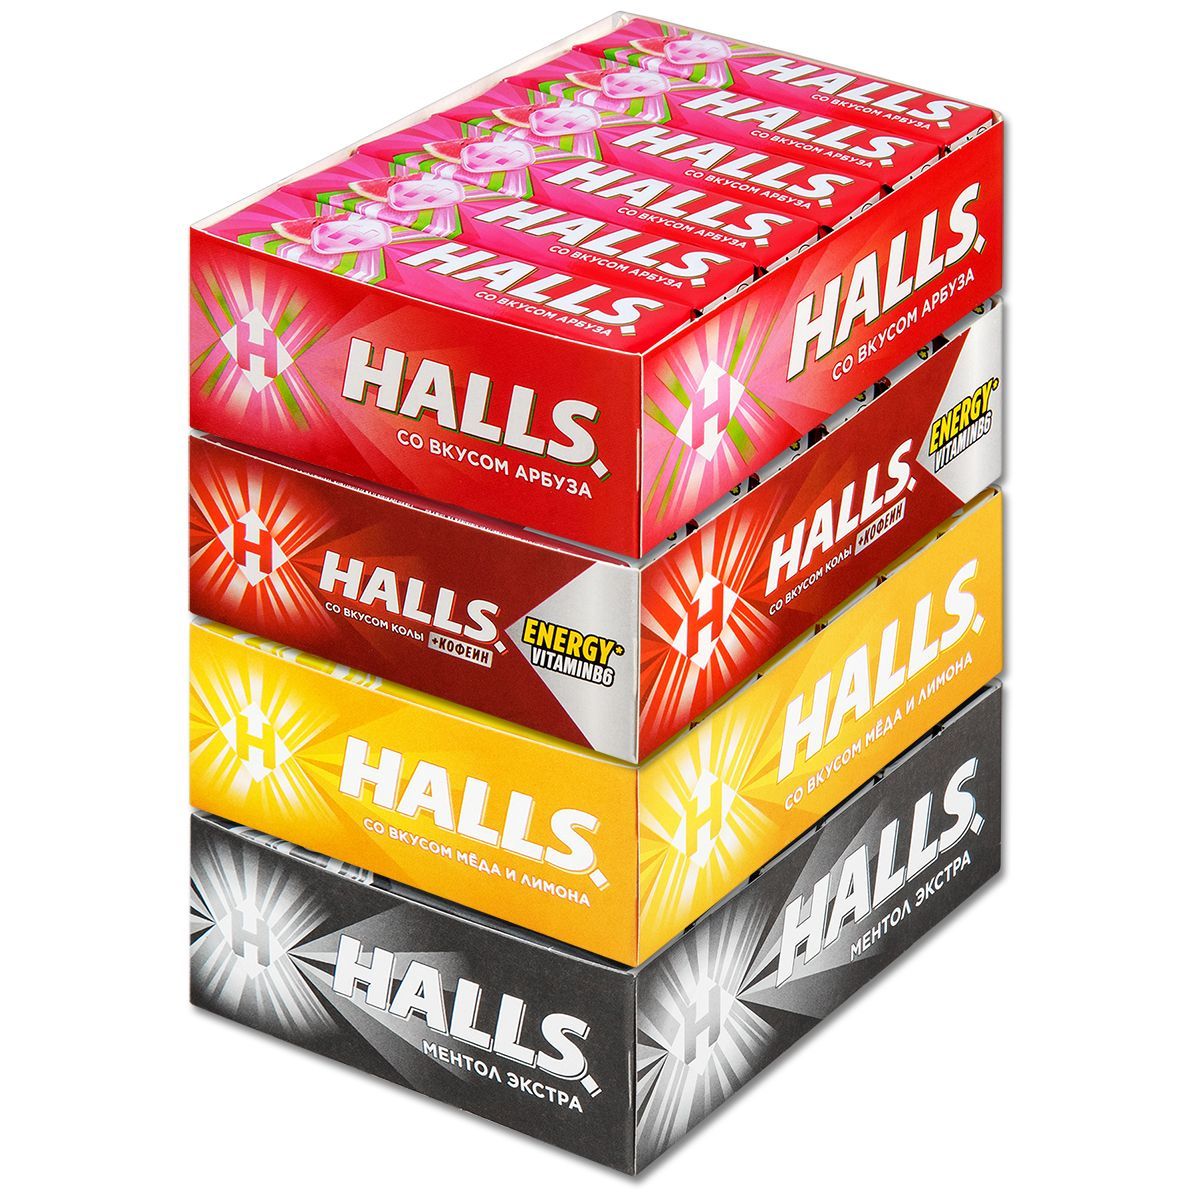 Halls конфеты. Упаковки конфет Halls. Холс отзывы. Halls карамель col ассорти.